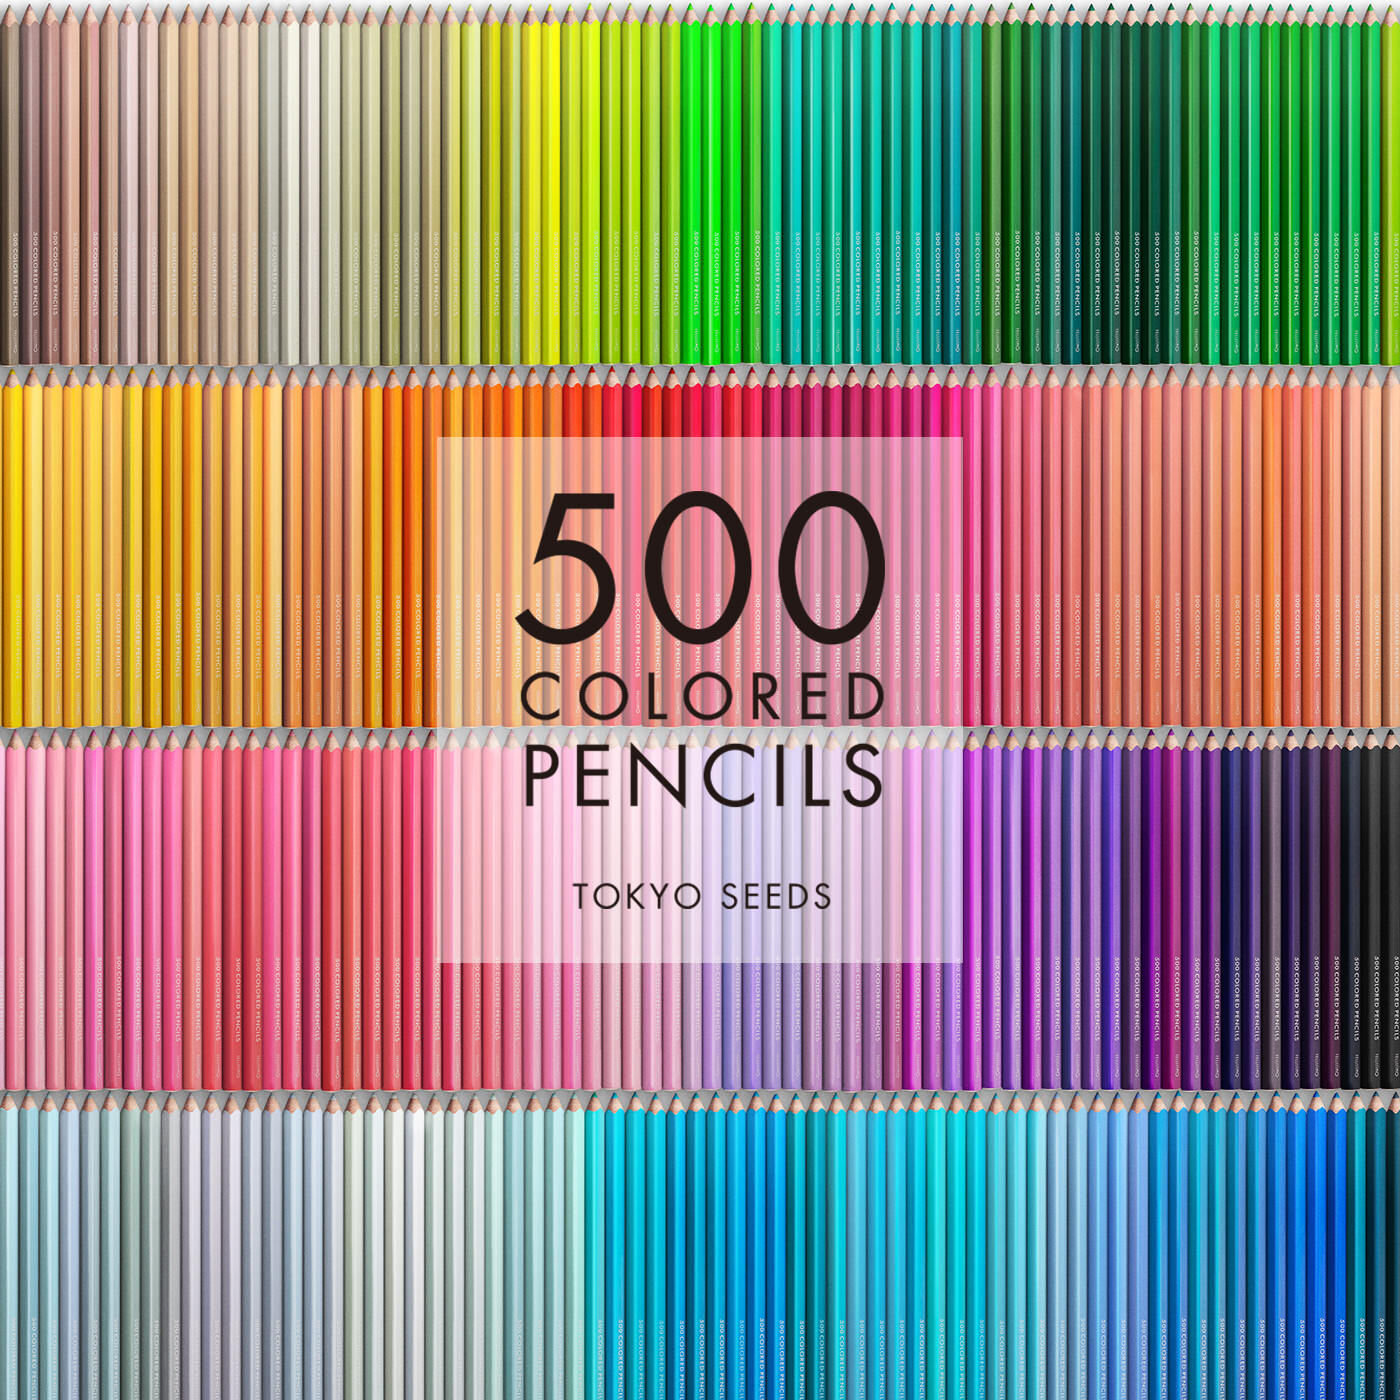 Real Stock|【86/500 LEMON SOUFFL?】500色の色えんぴつ TOKYO SEEDS|1992年、世界初の「500色」という膨大な色数の色えんぴつが誕生して以来、その販売数は発売当初から合わせると、世界55ヵ国10万セット以上。今回、メイド・イン・ジャパンにこだわり、すべてが新しく生まれ変わって登場しました。